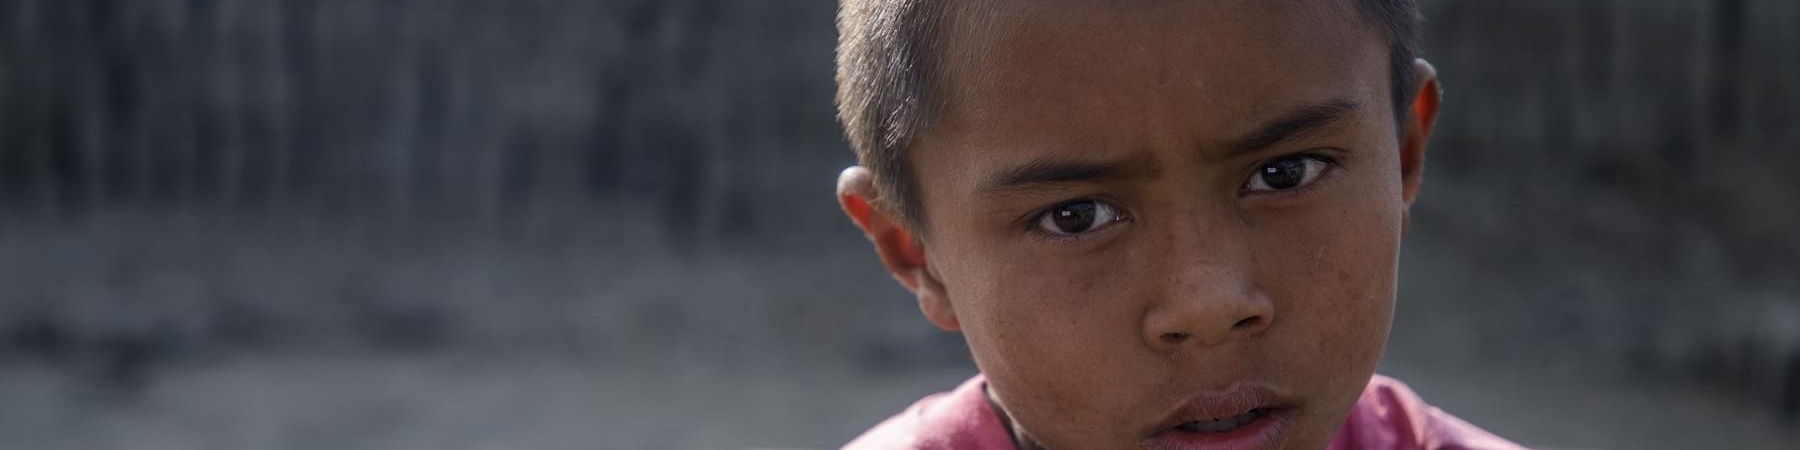 Primo piano di bambino nepalese costretto a lavorare in fabbrica di mattoni